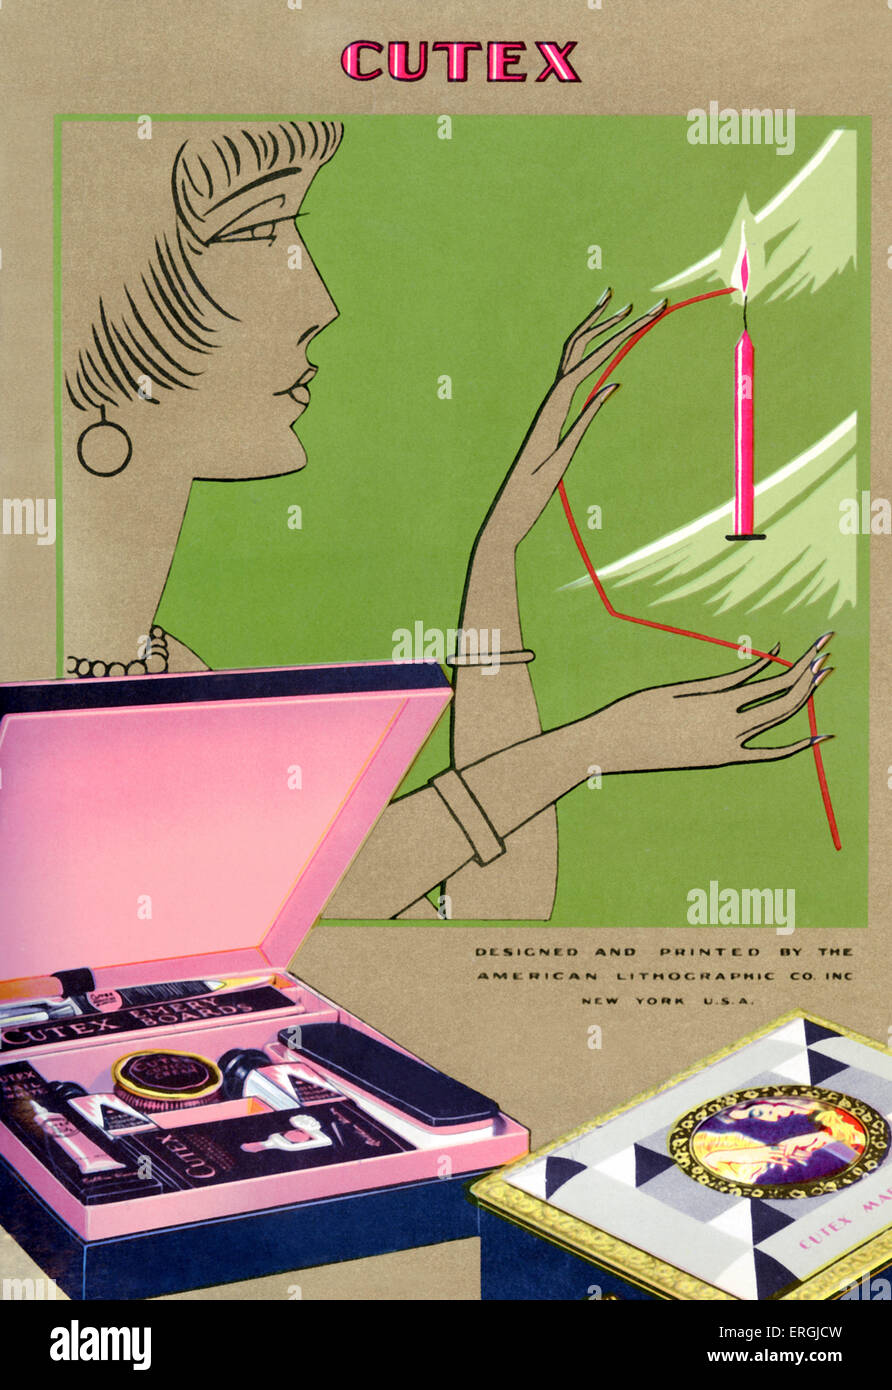 Juego de manicura uñas Cutex anuncio. Diseñado por el norteamericano Litografía Co., 1930. Foto de stock